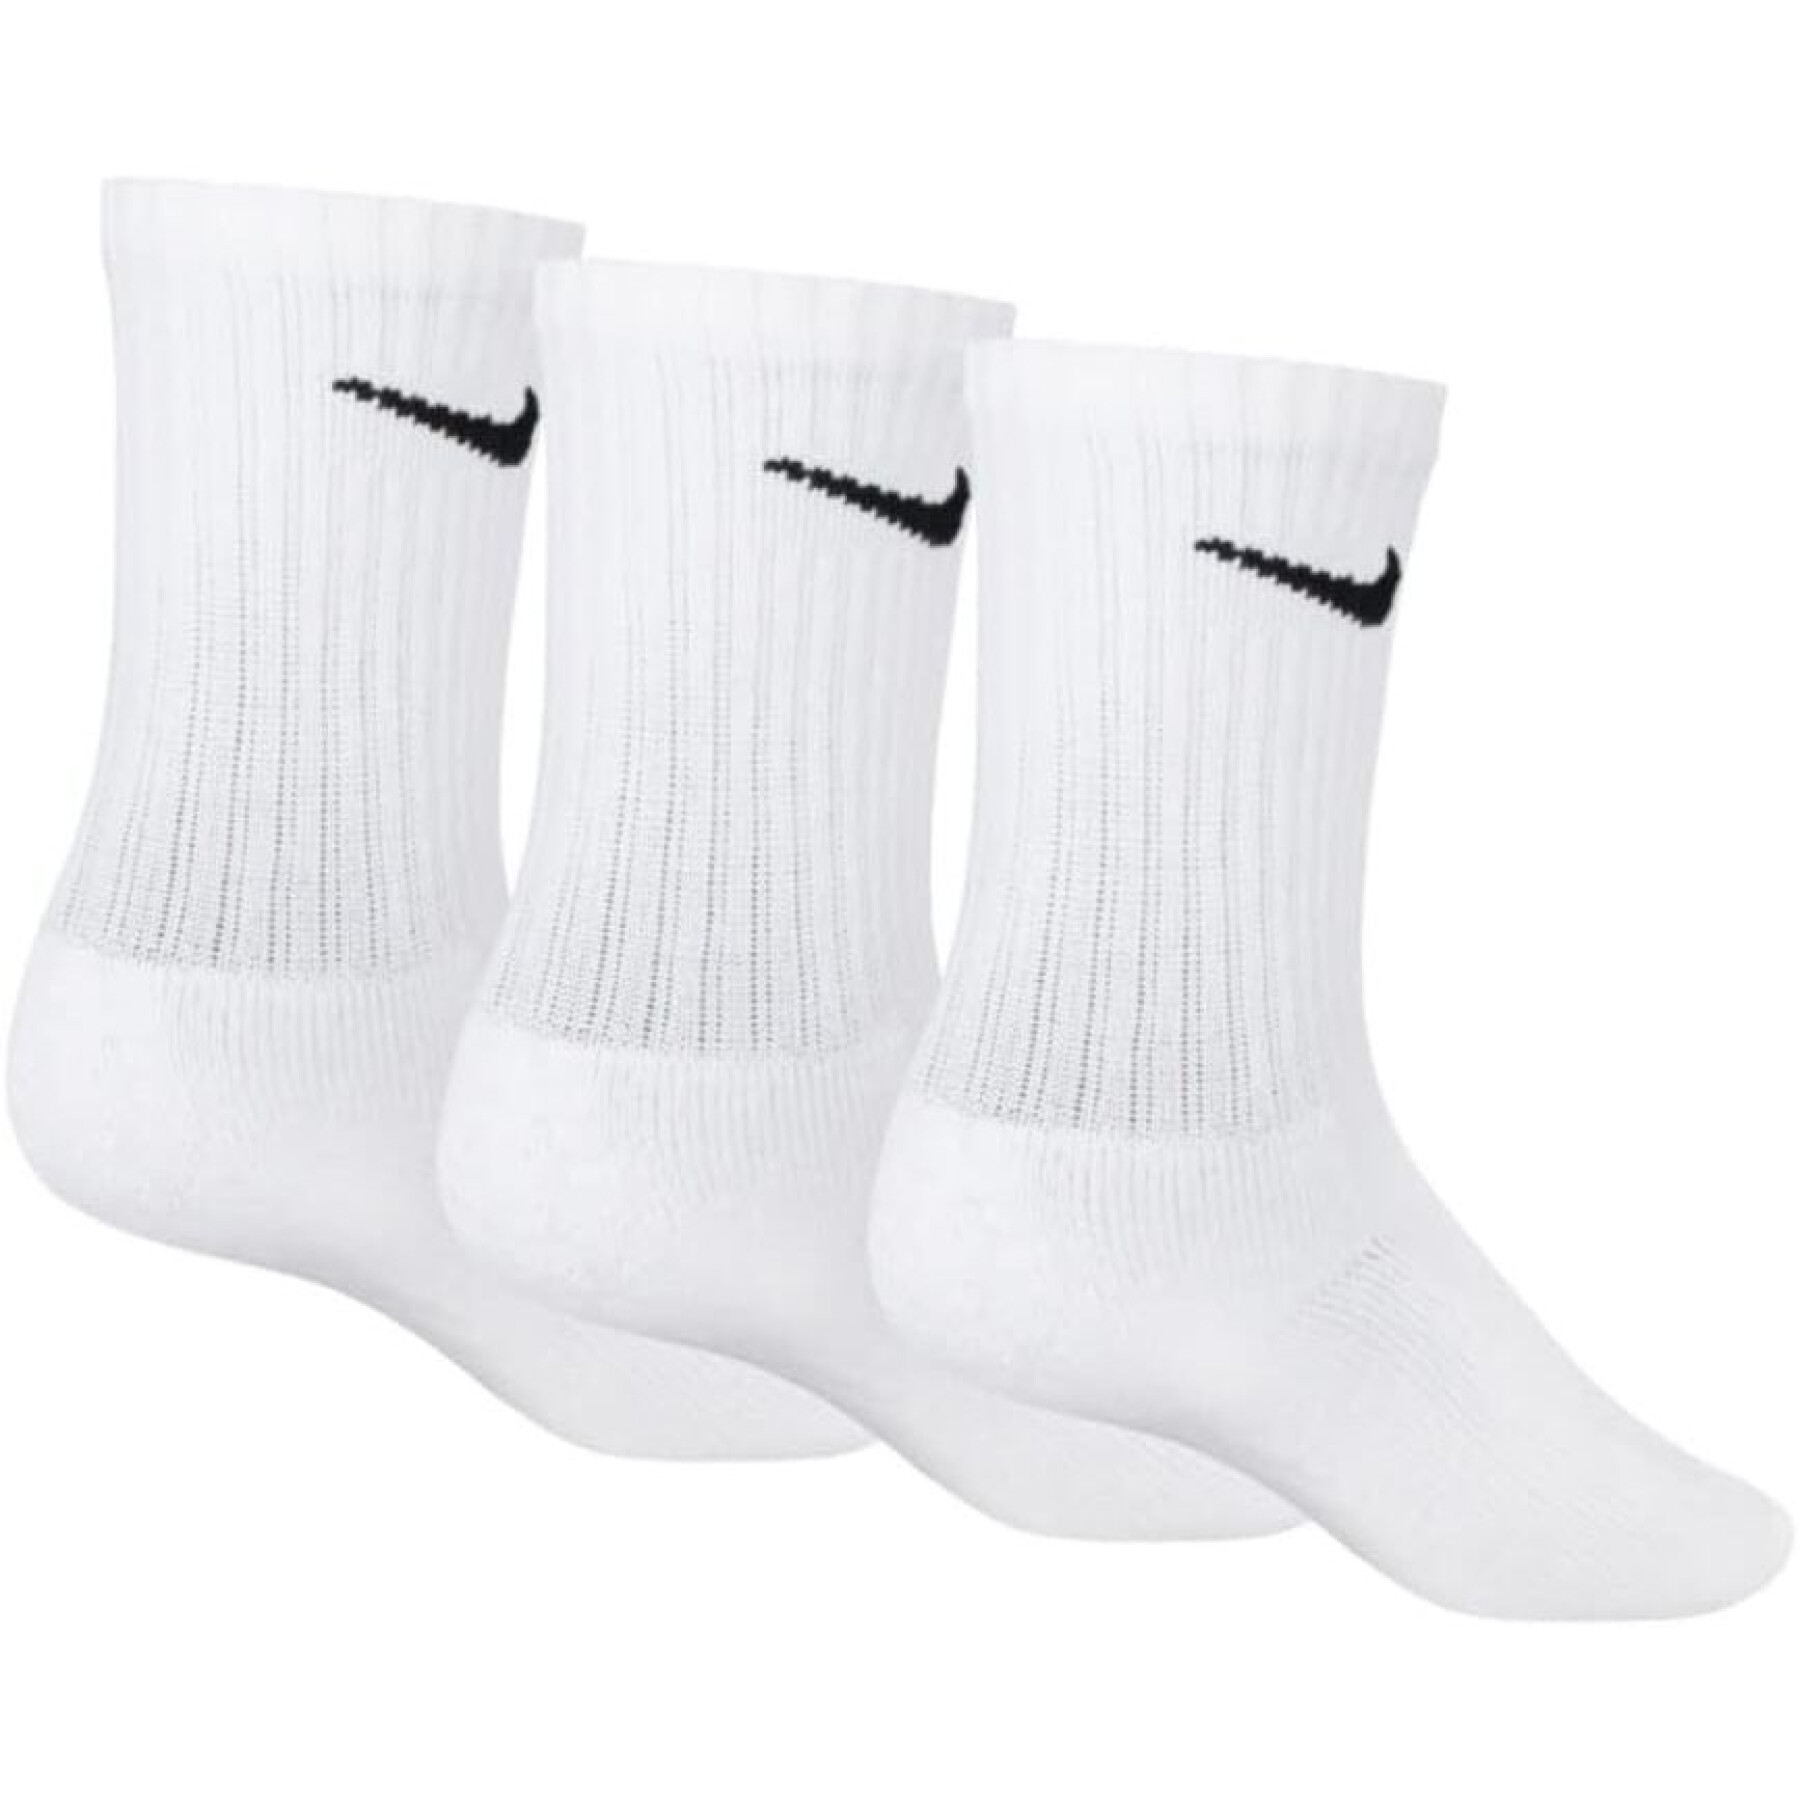 Confezione da 3 calzini per bambini Nike Crew Basic